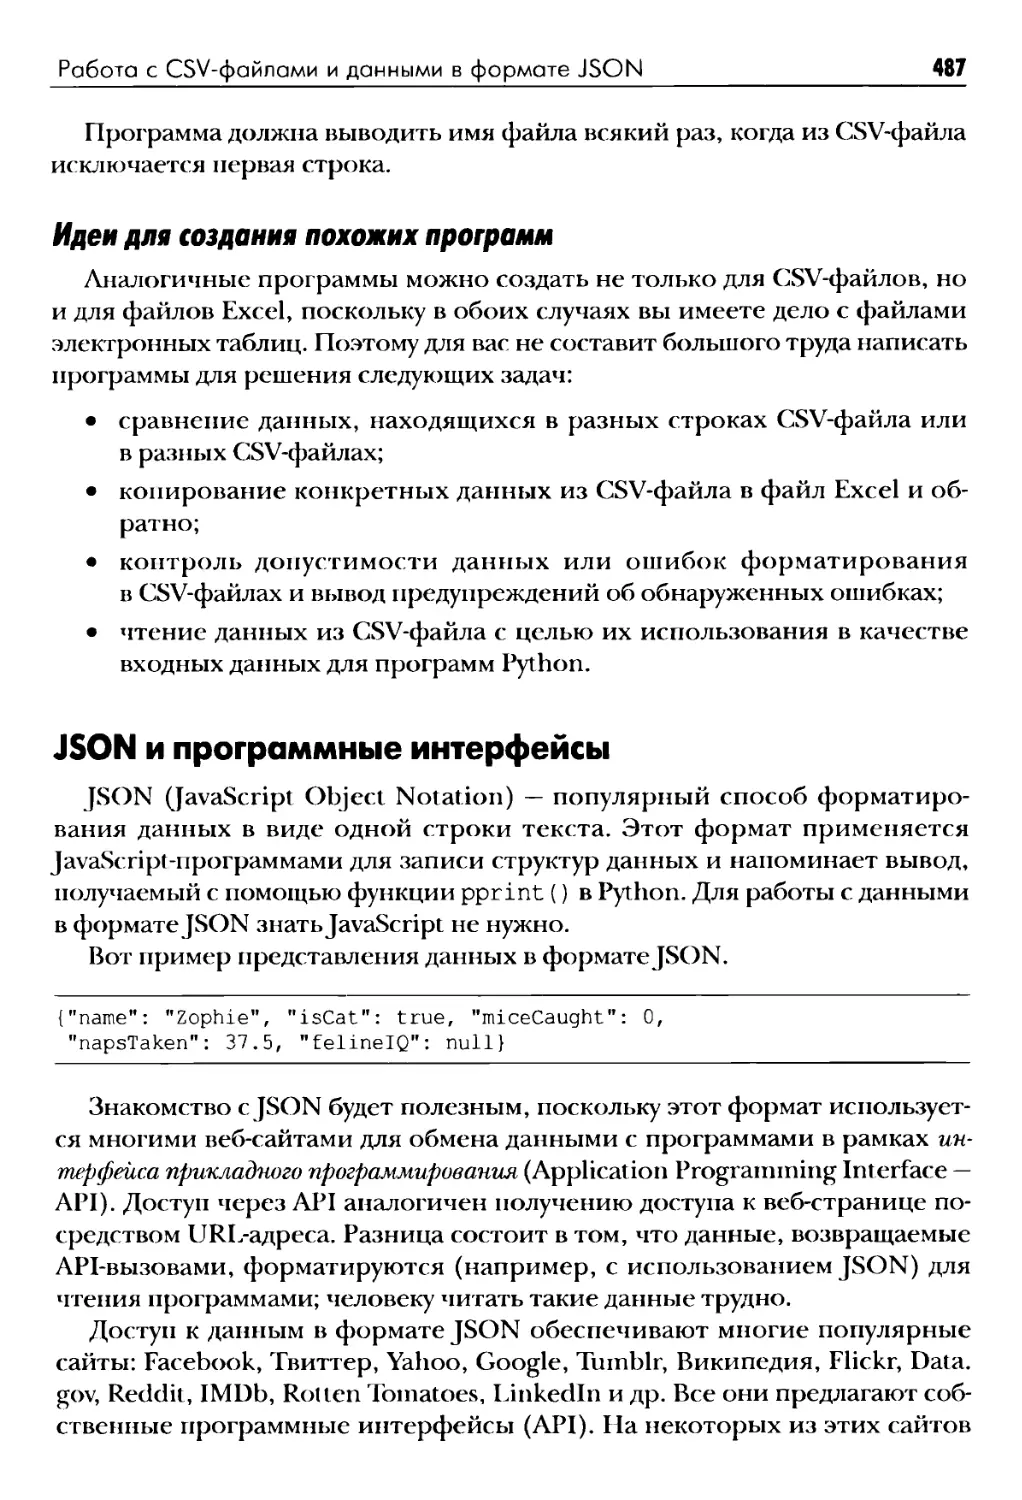 Идеи для создания похожих программ
JSON и программные интерфейсы